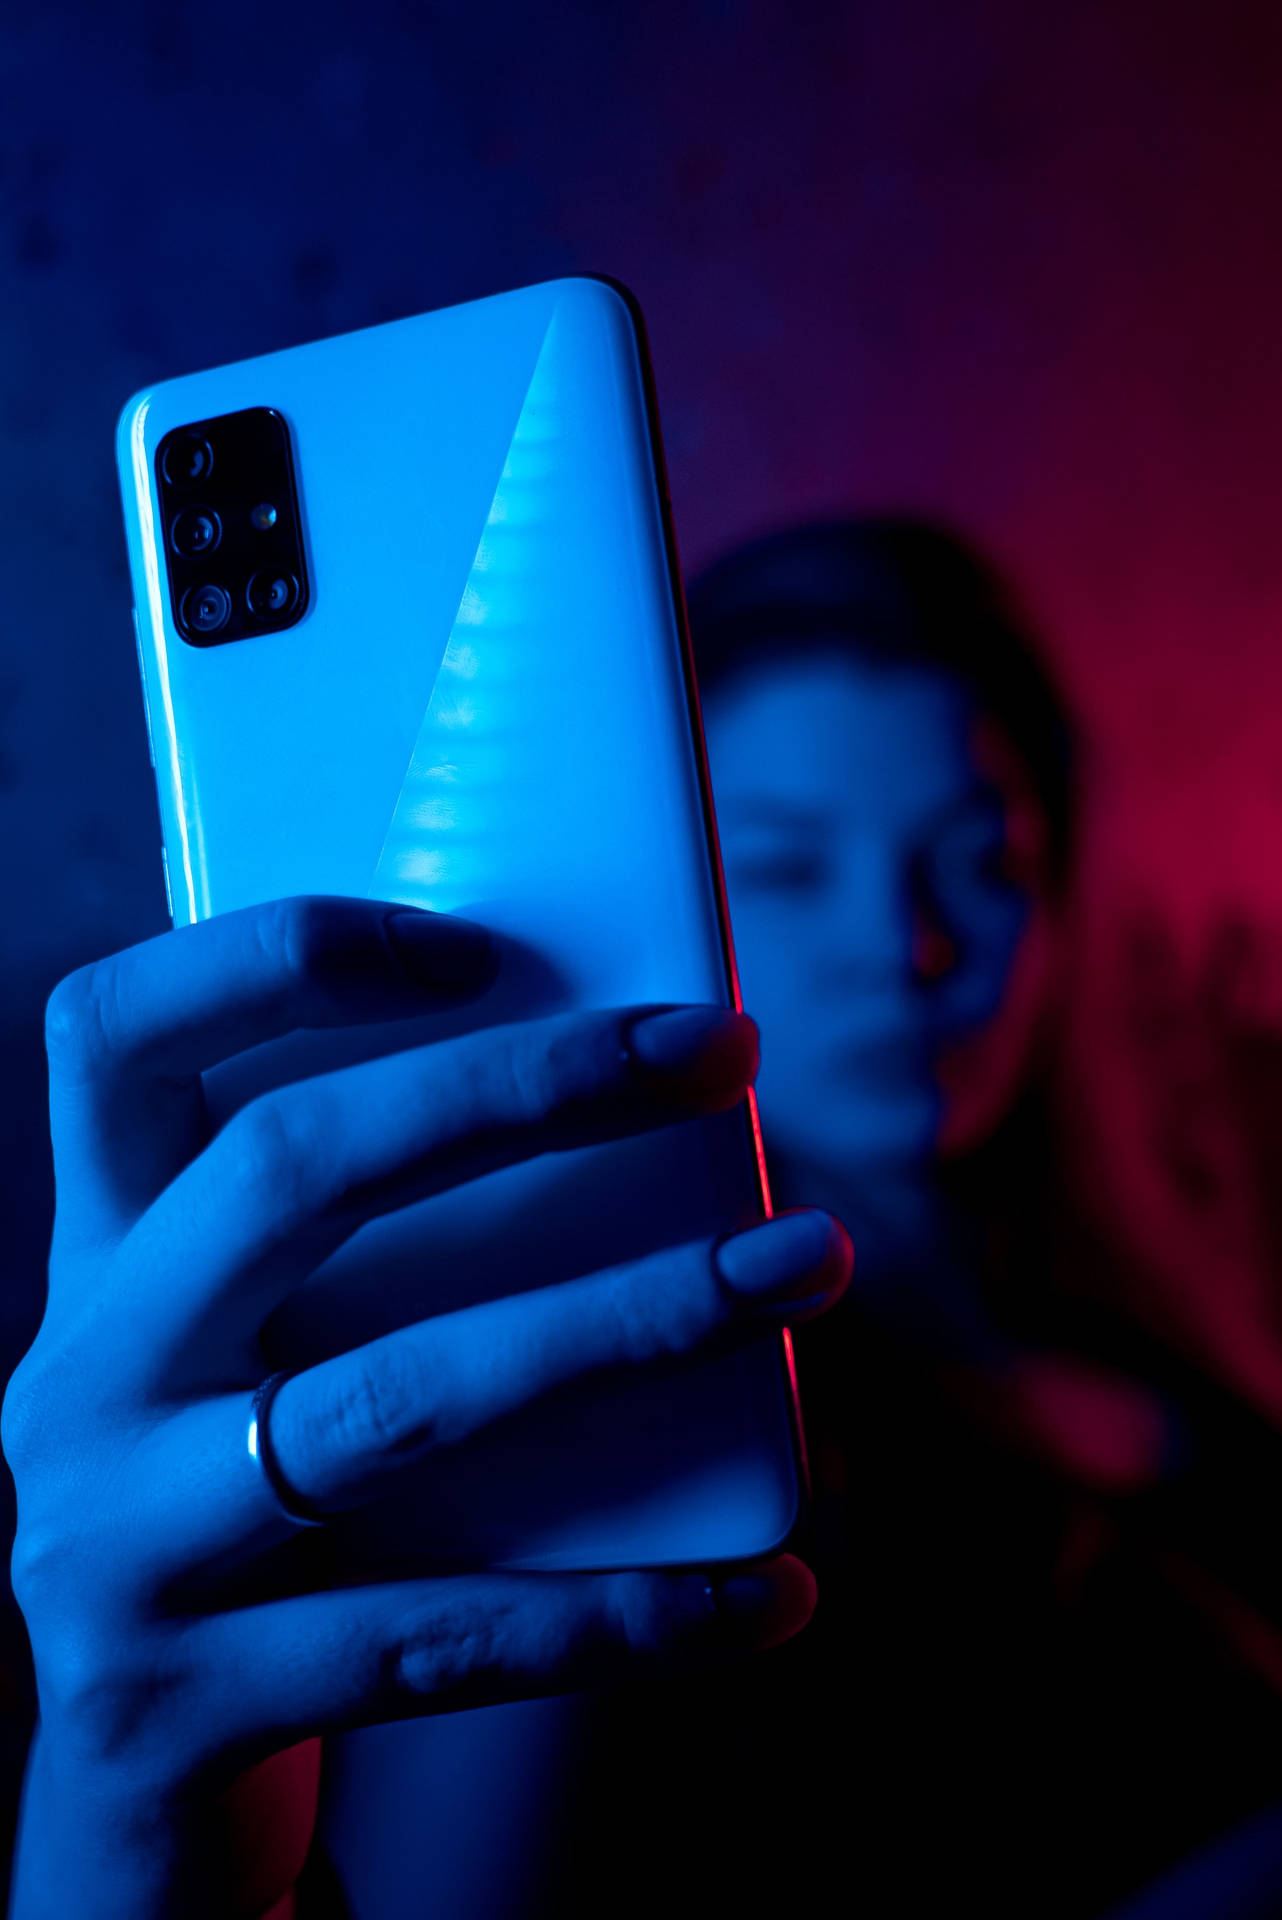 Fraumit Handy In Neon Blauem Iphone Wallpaper